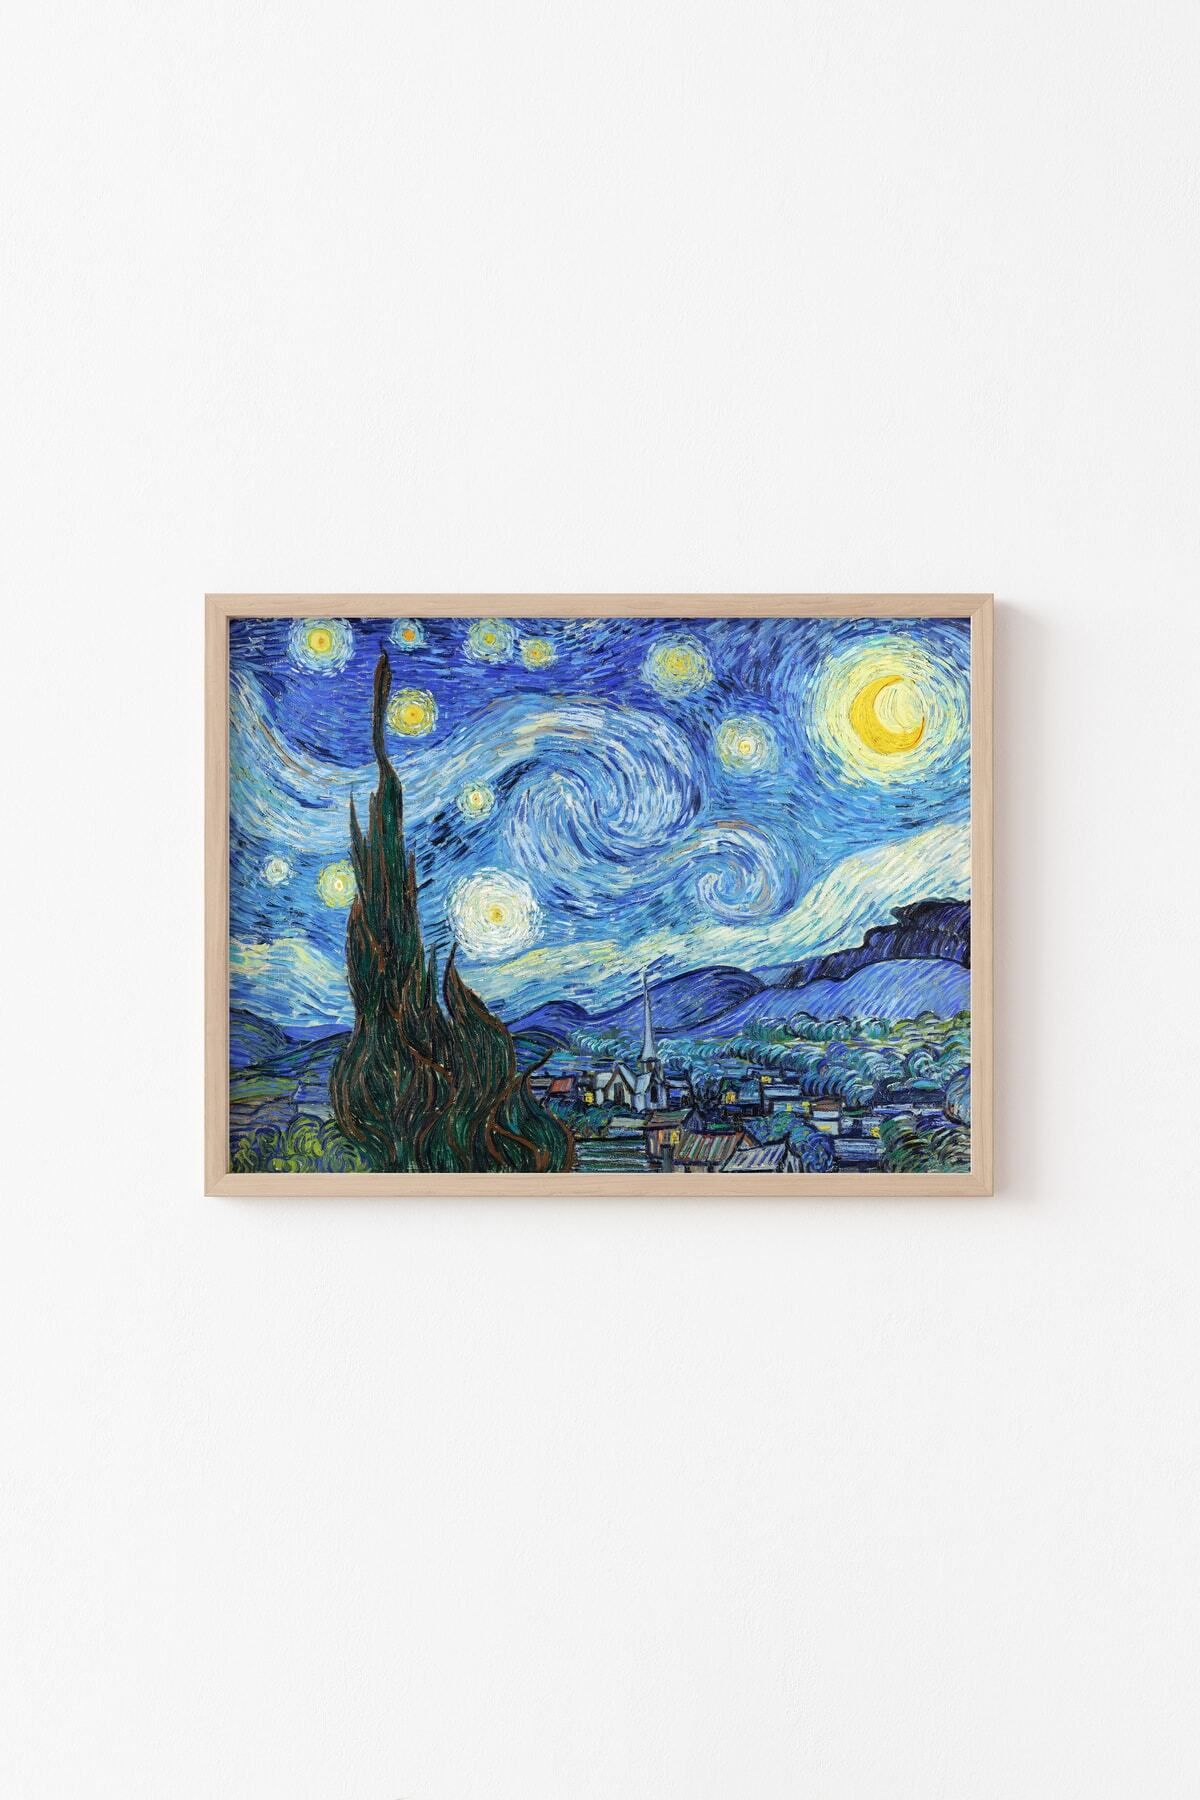 epiqart Yıldızlı Gece - Vincent Van Gogh - Ahşap Çerçeve